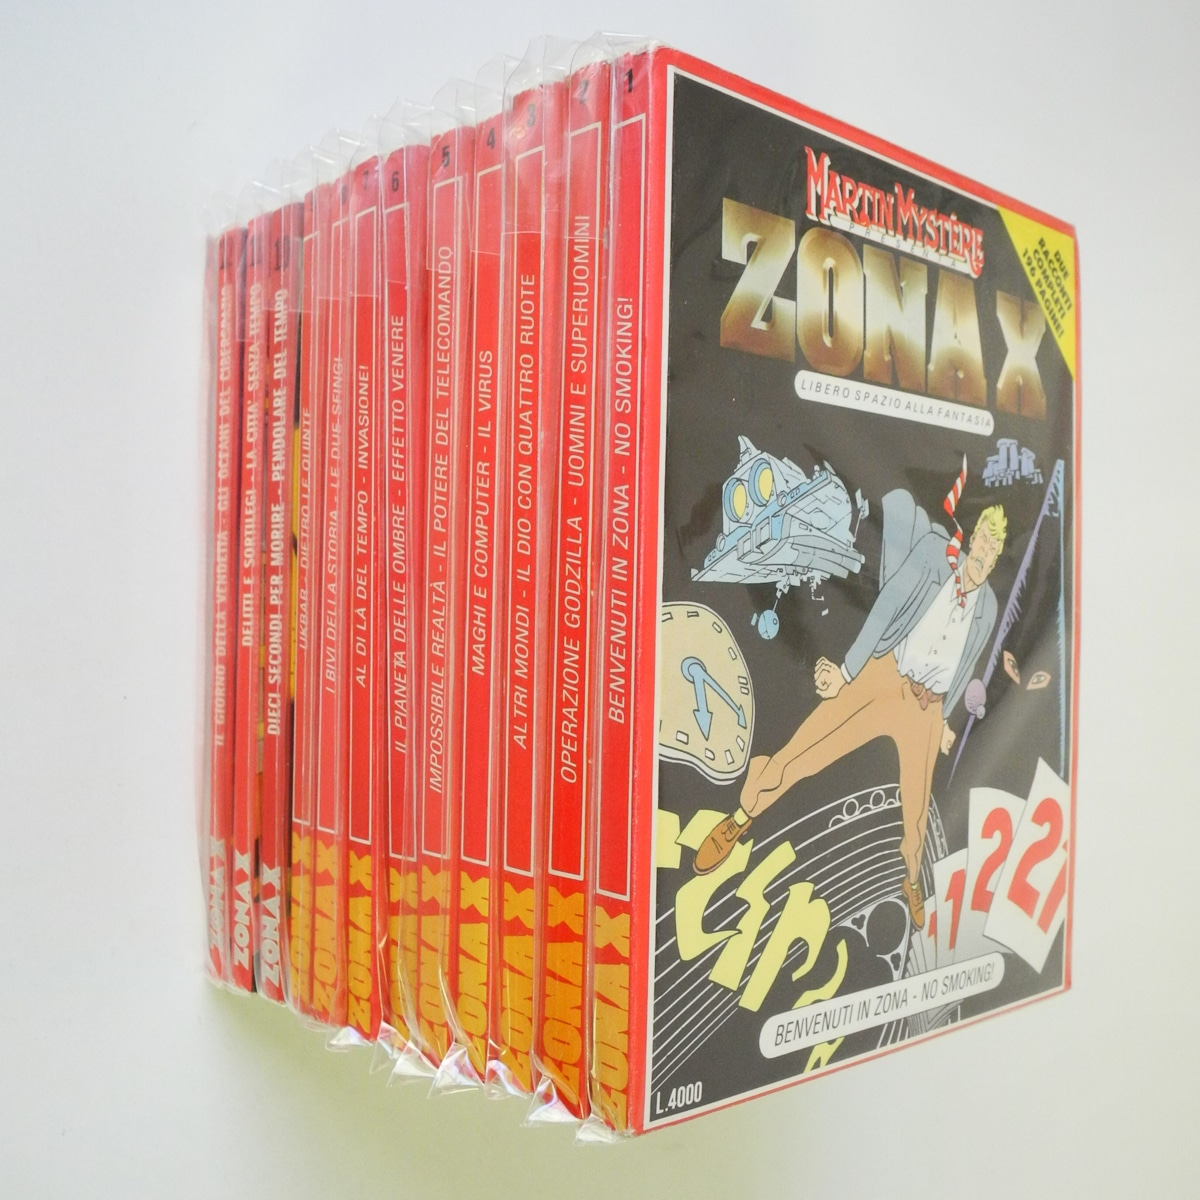 Martin Mystere Presenta Zona X n. 1-12 edizioni Bonelli